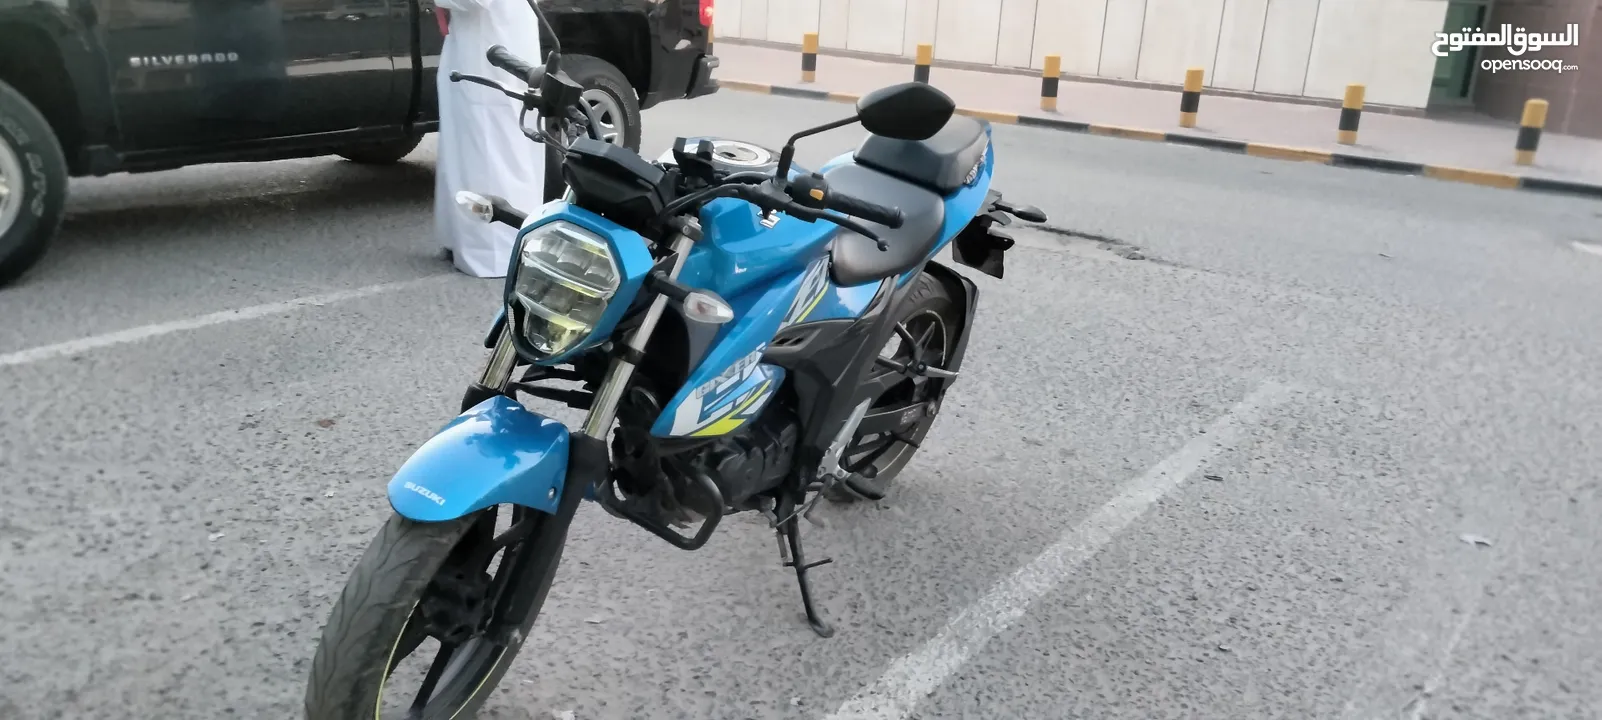 Suzuki gixxer 150c motorcycle